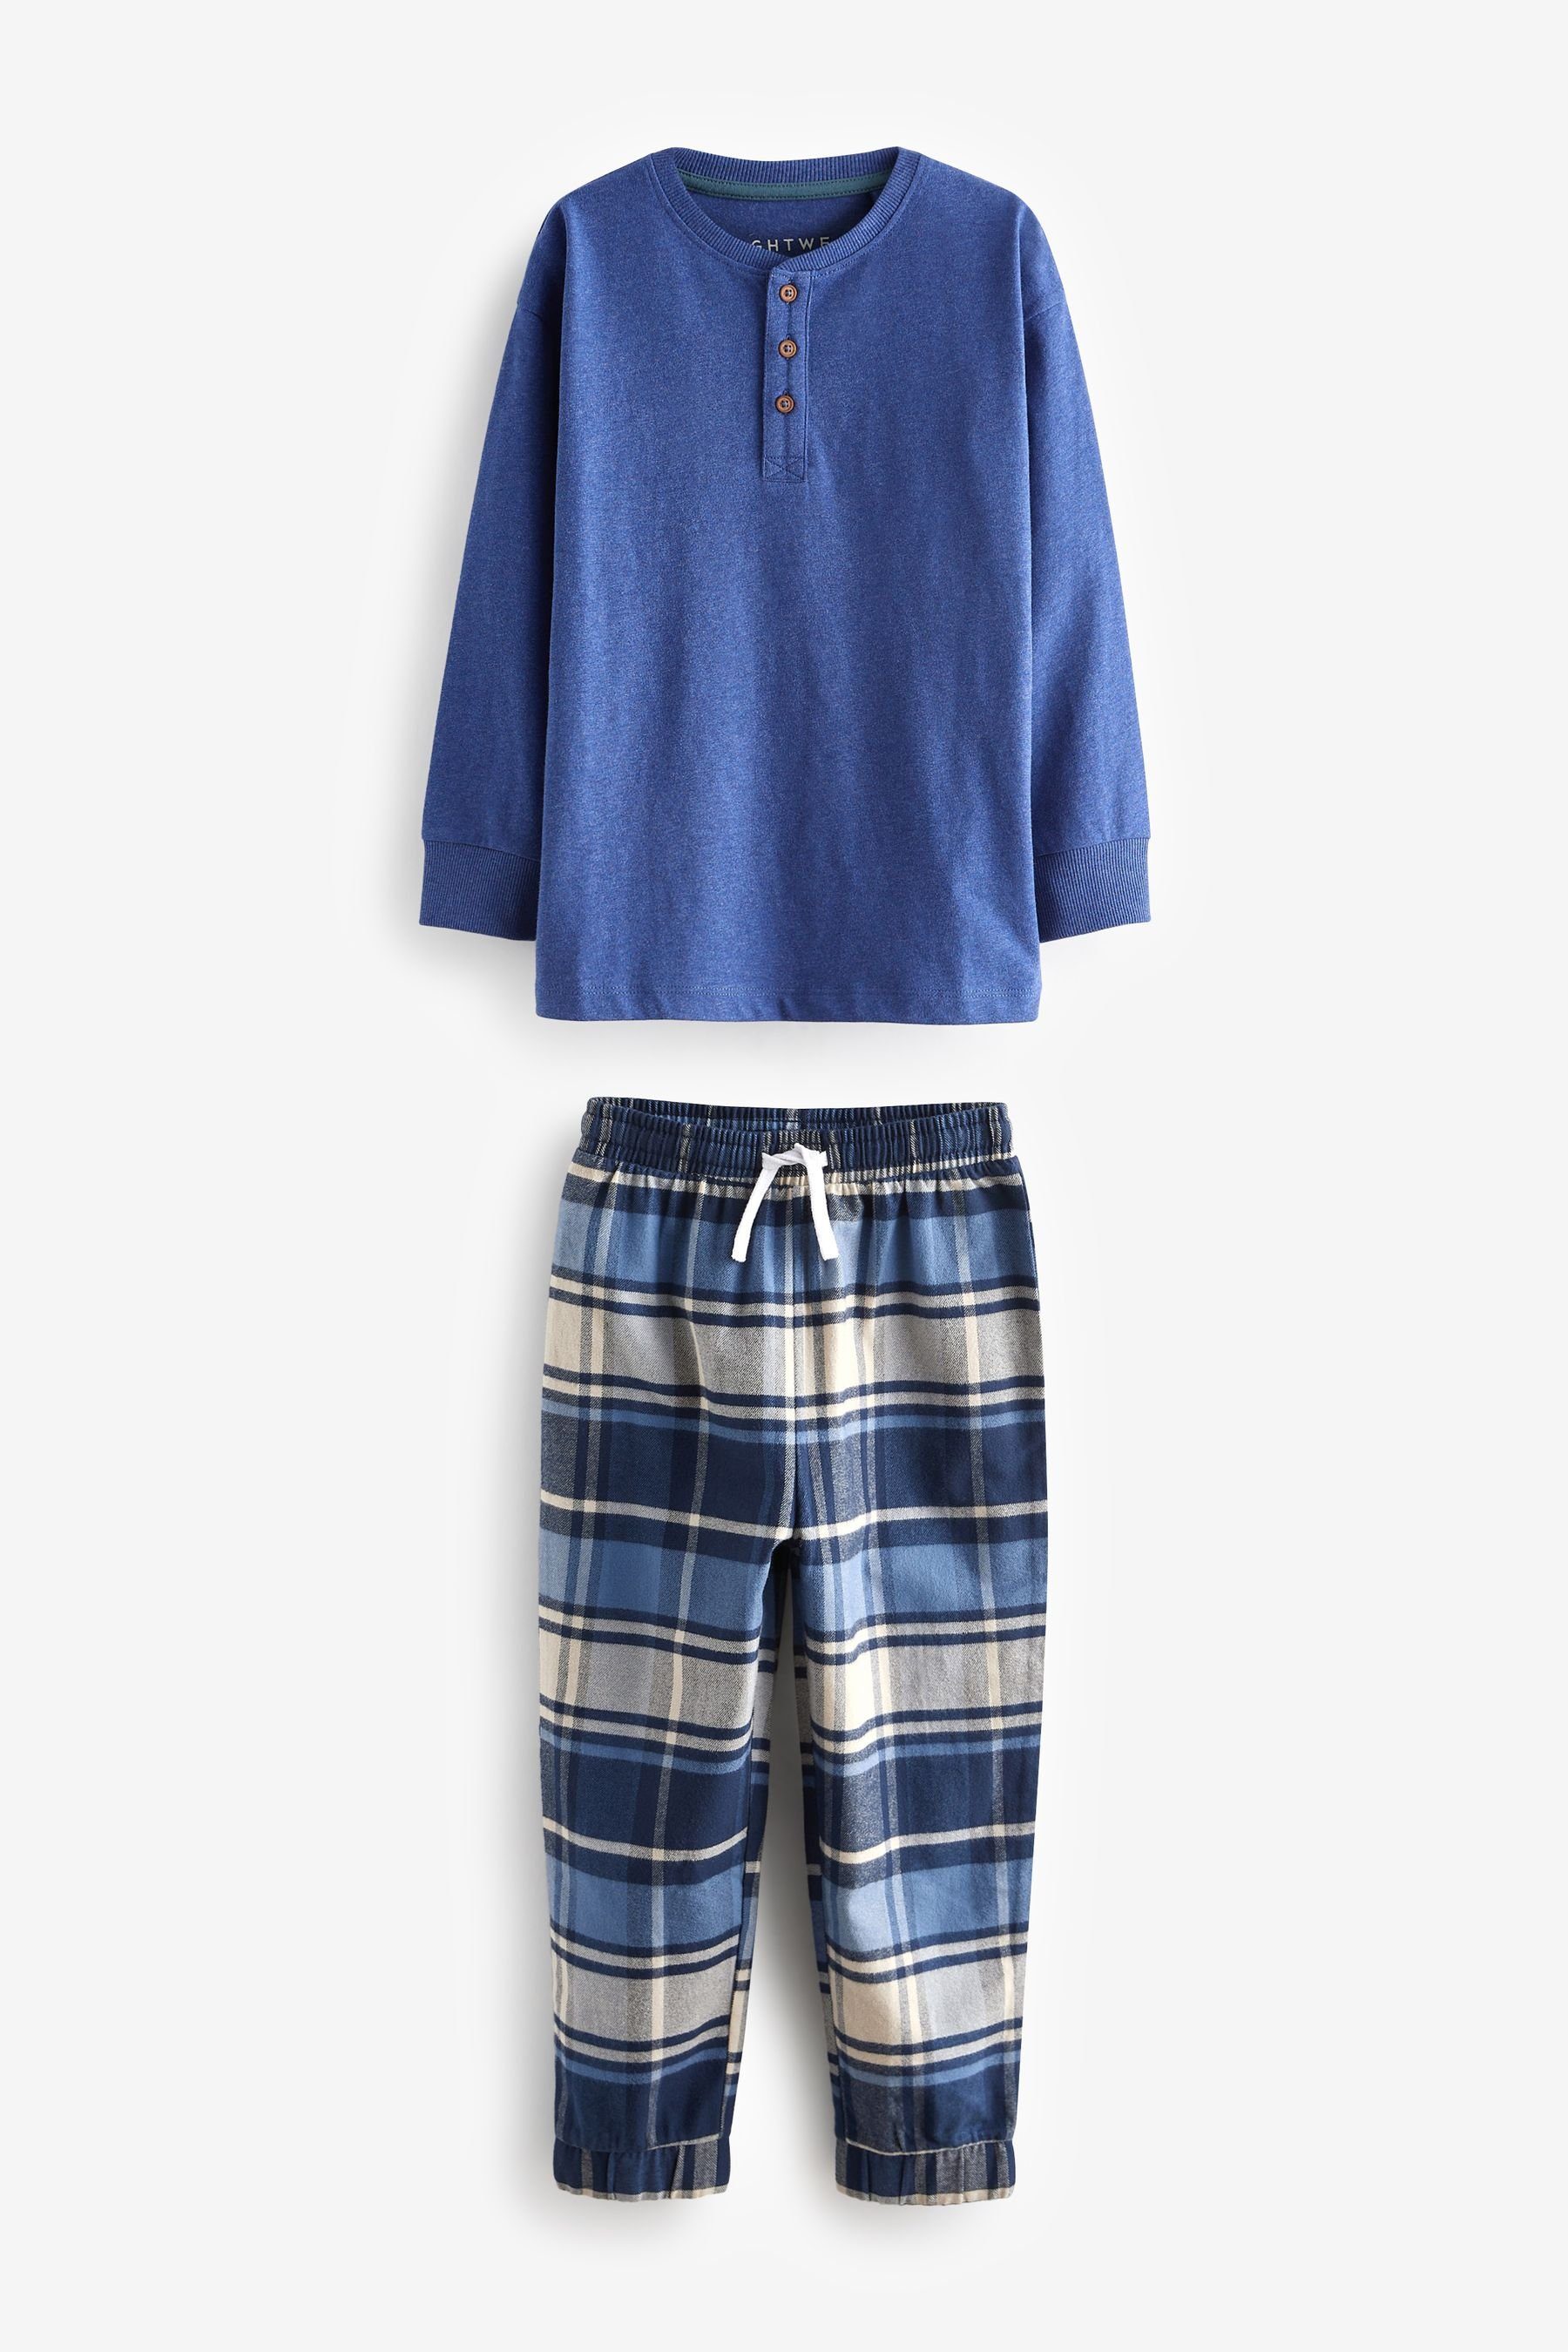 Next Pyjama Check (4 Blue Bottom im 2er-Pack Pyjamas tlg)